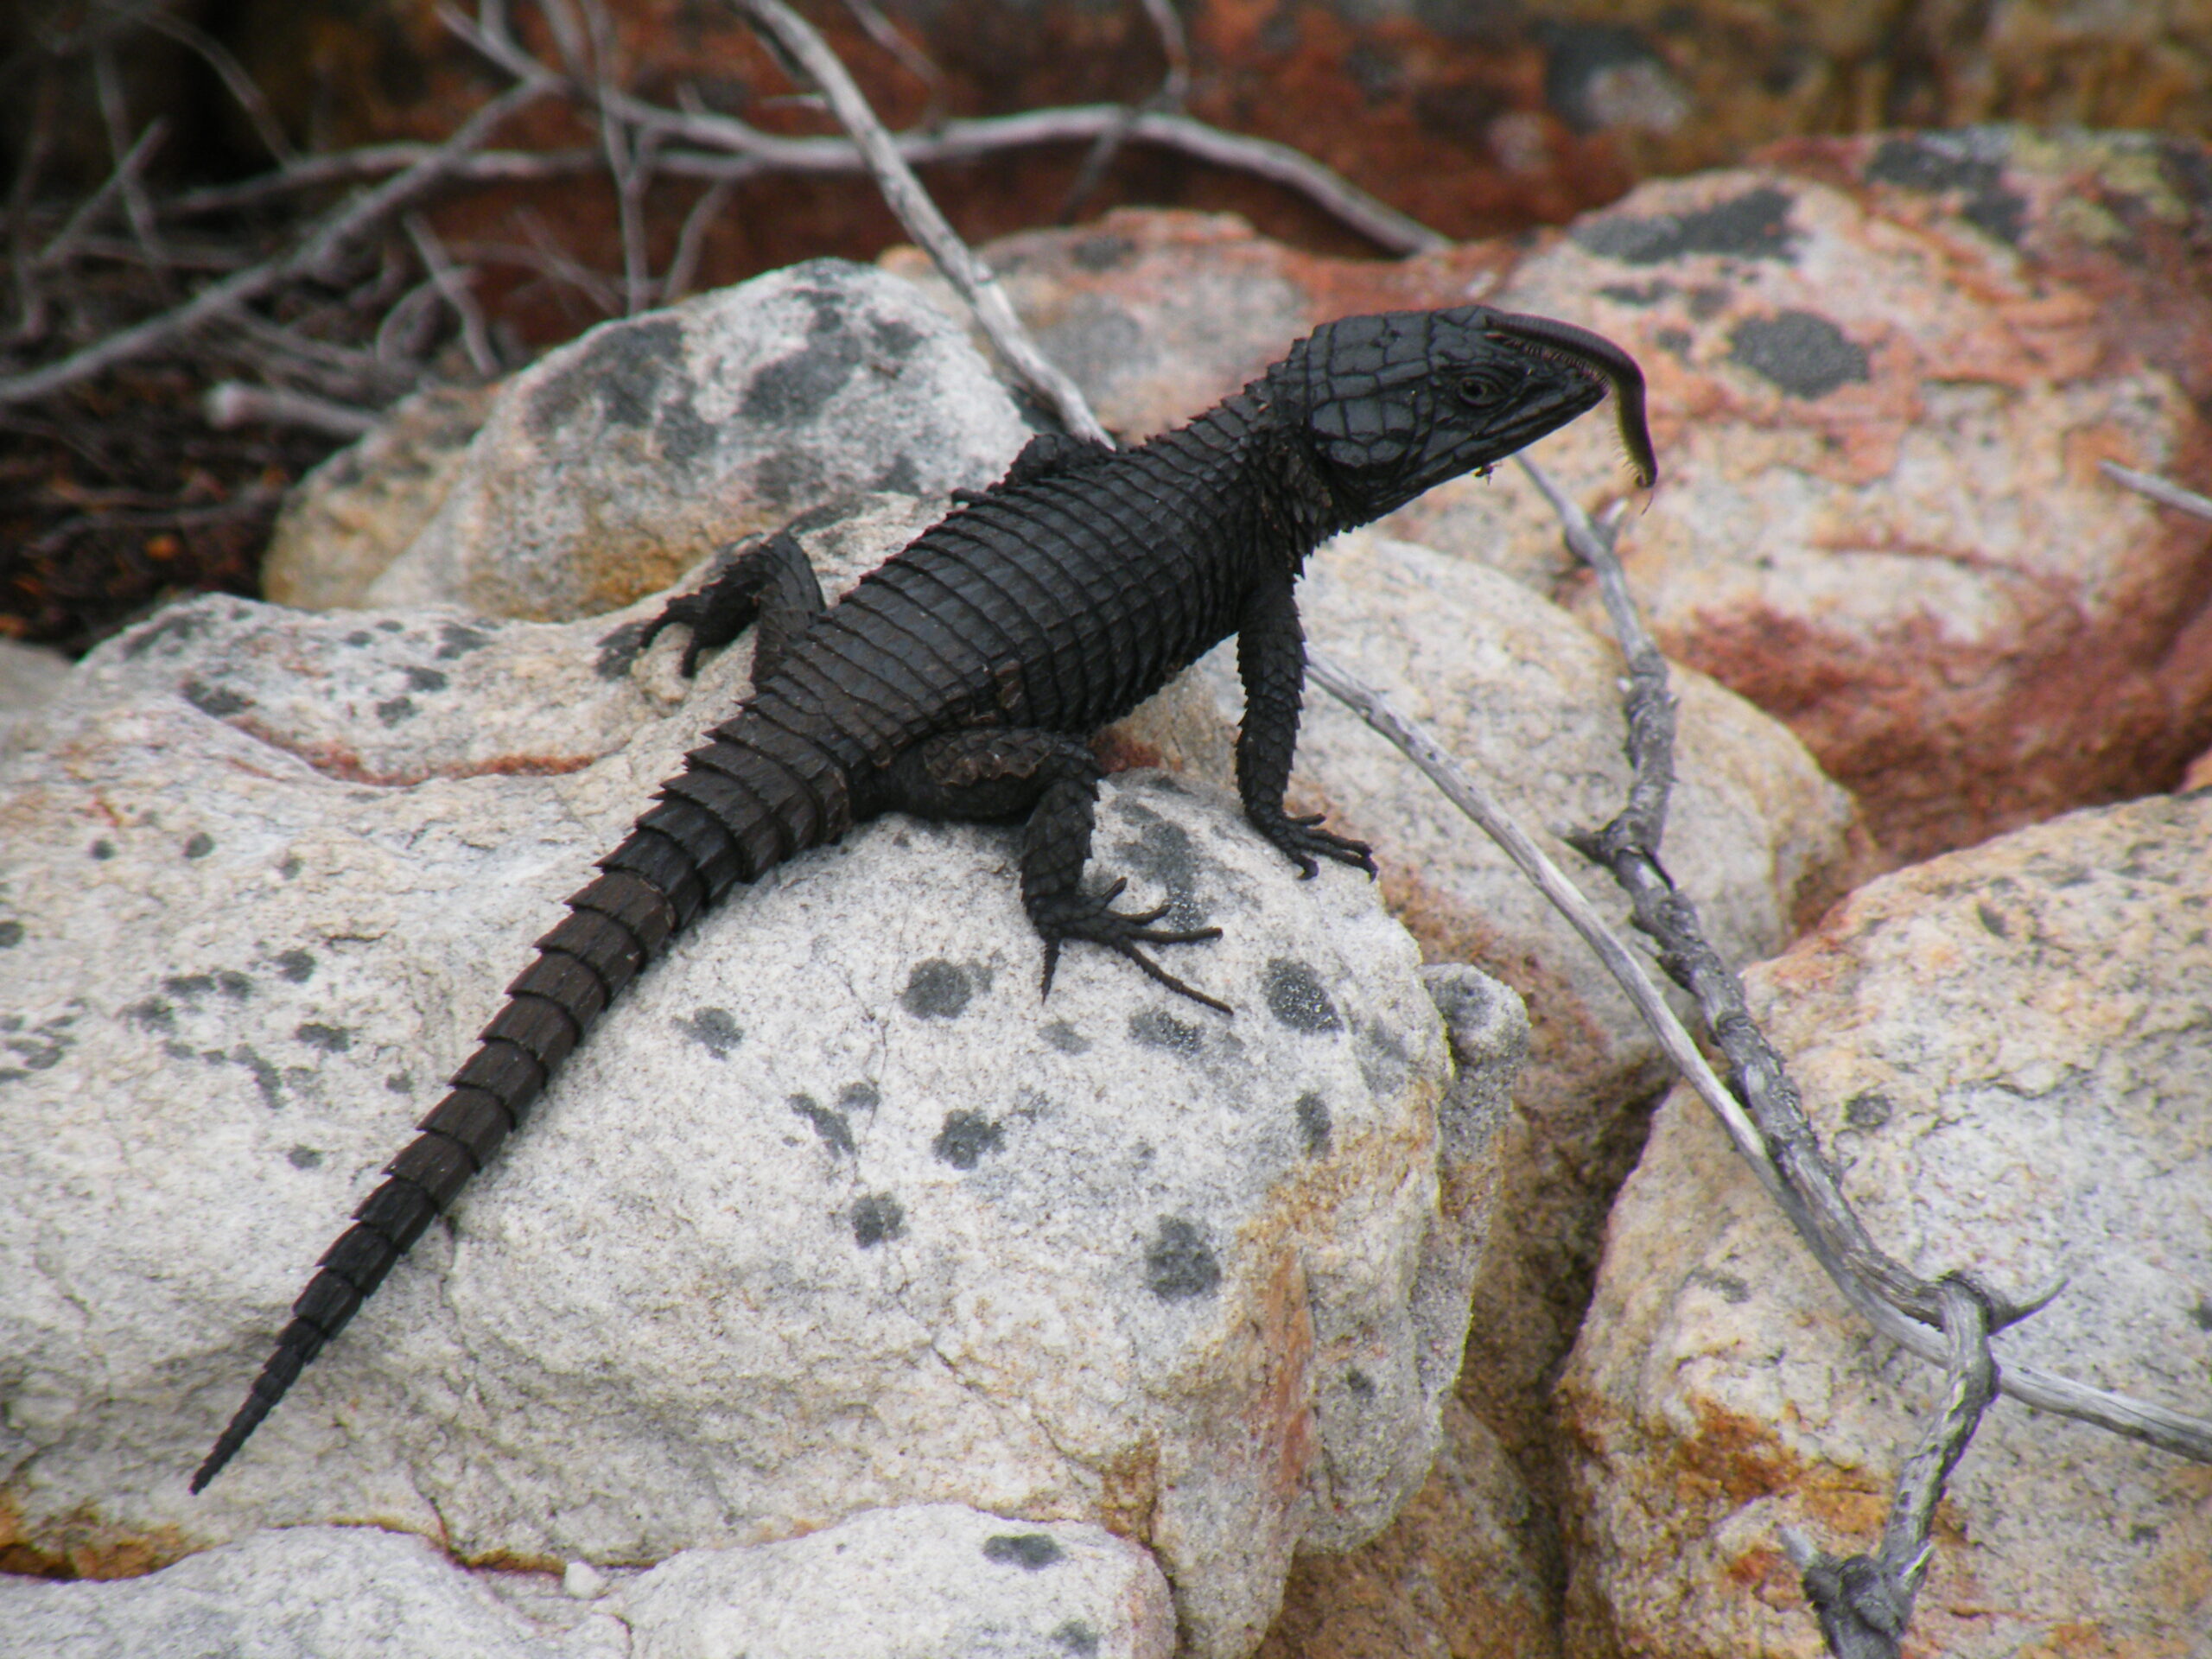 Is a black lizard poisonous?